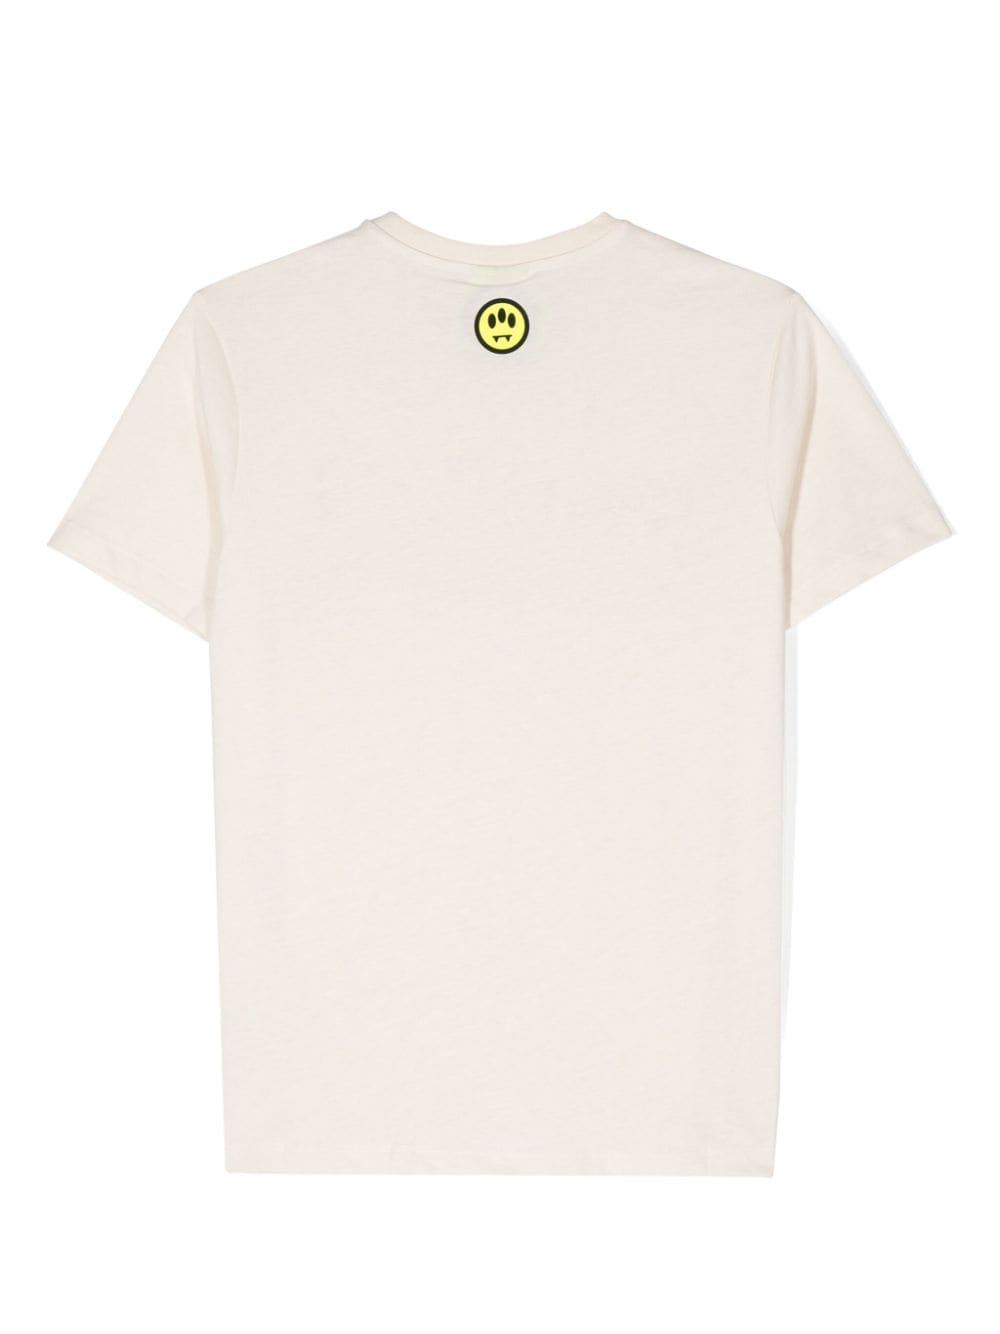 T-shirt beige per bambino con logo